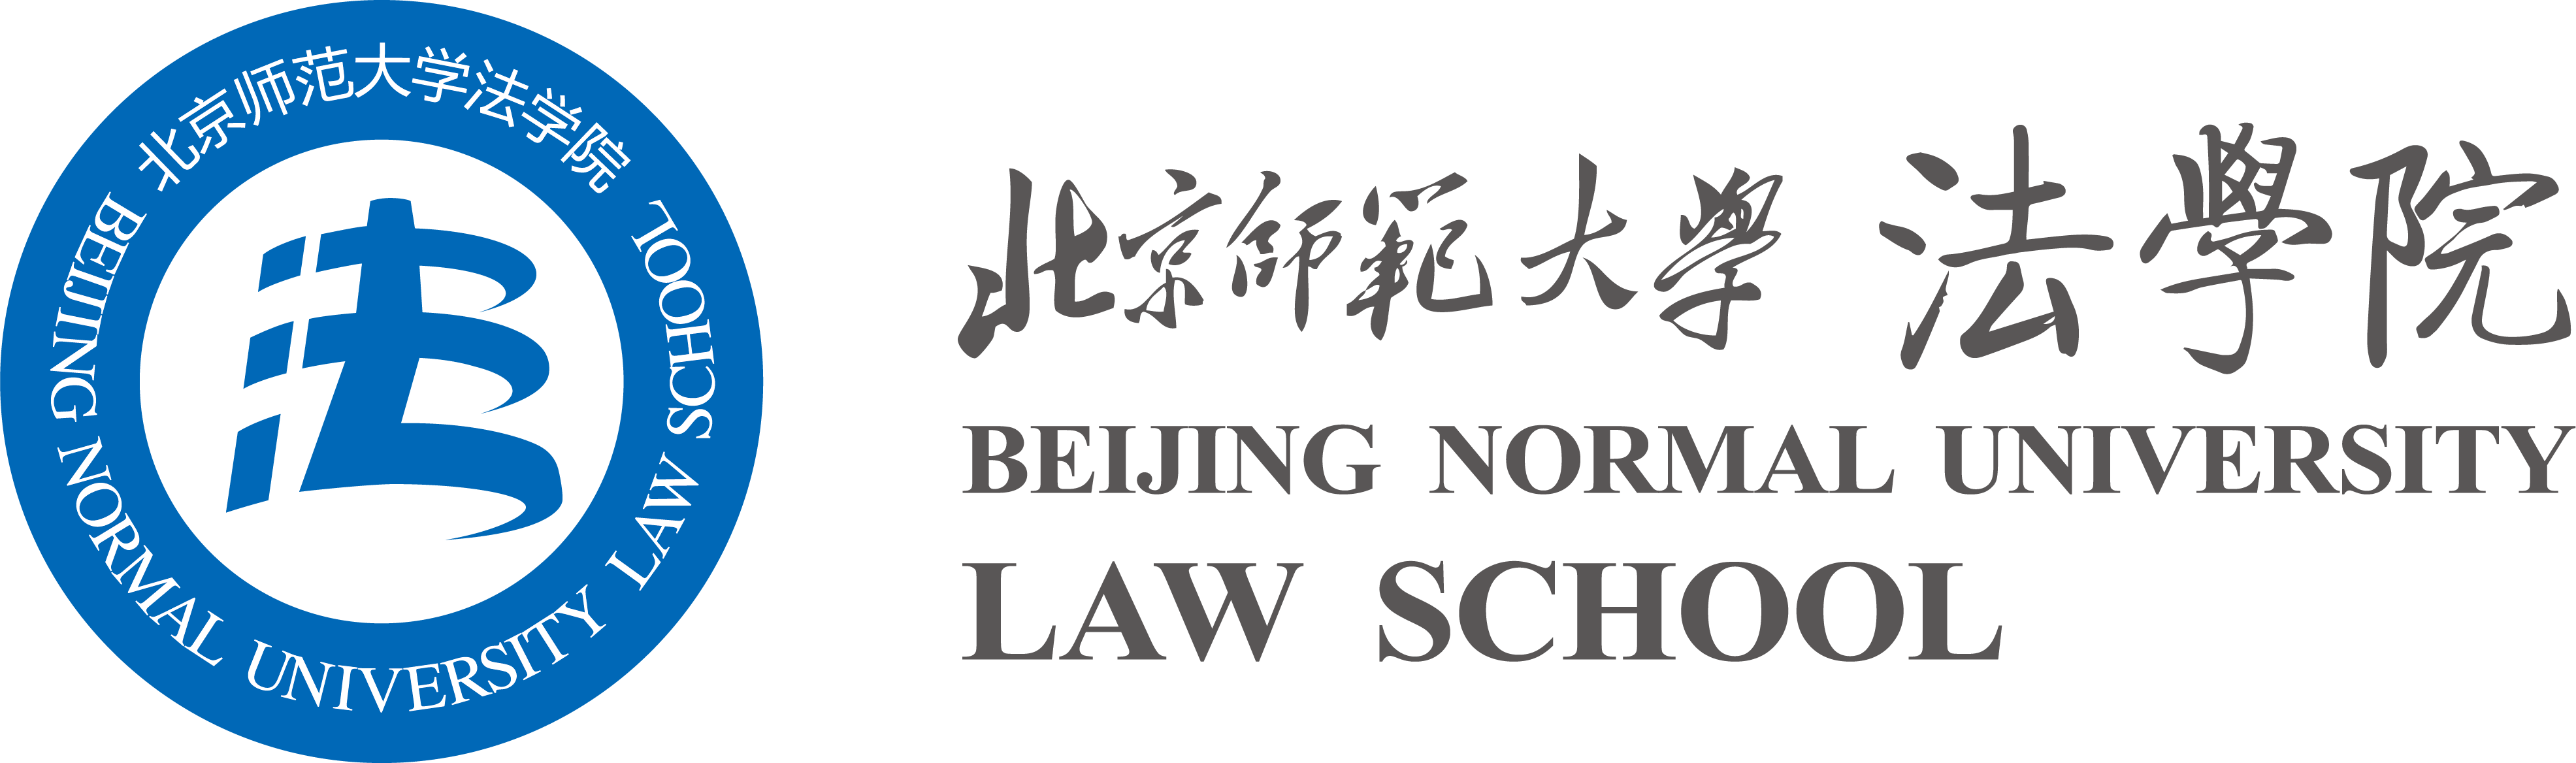 北京師範大學法學院